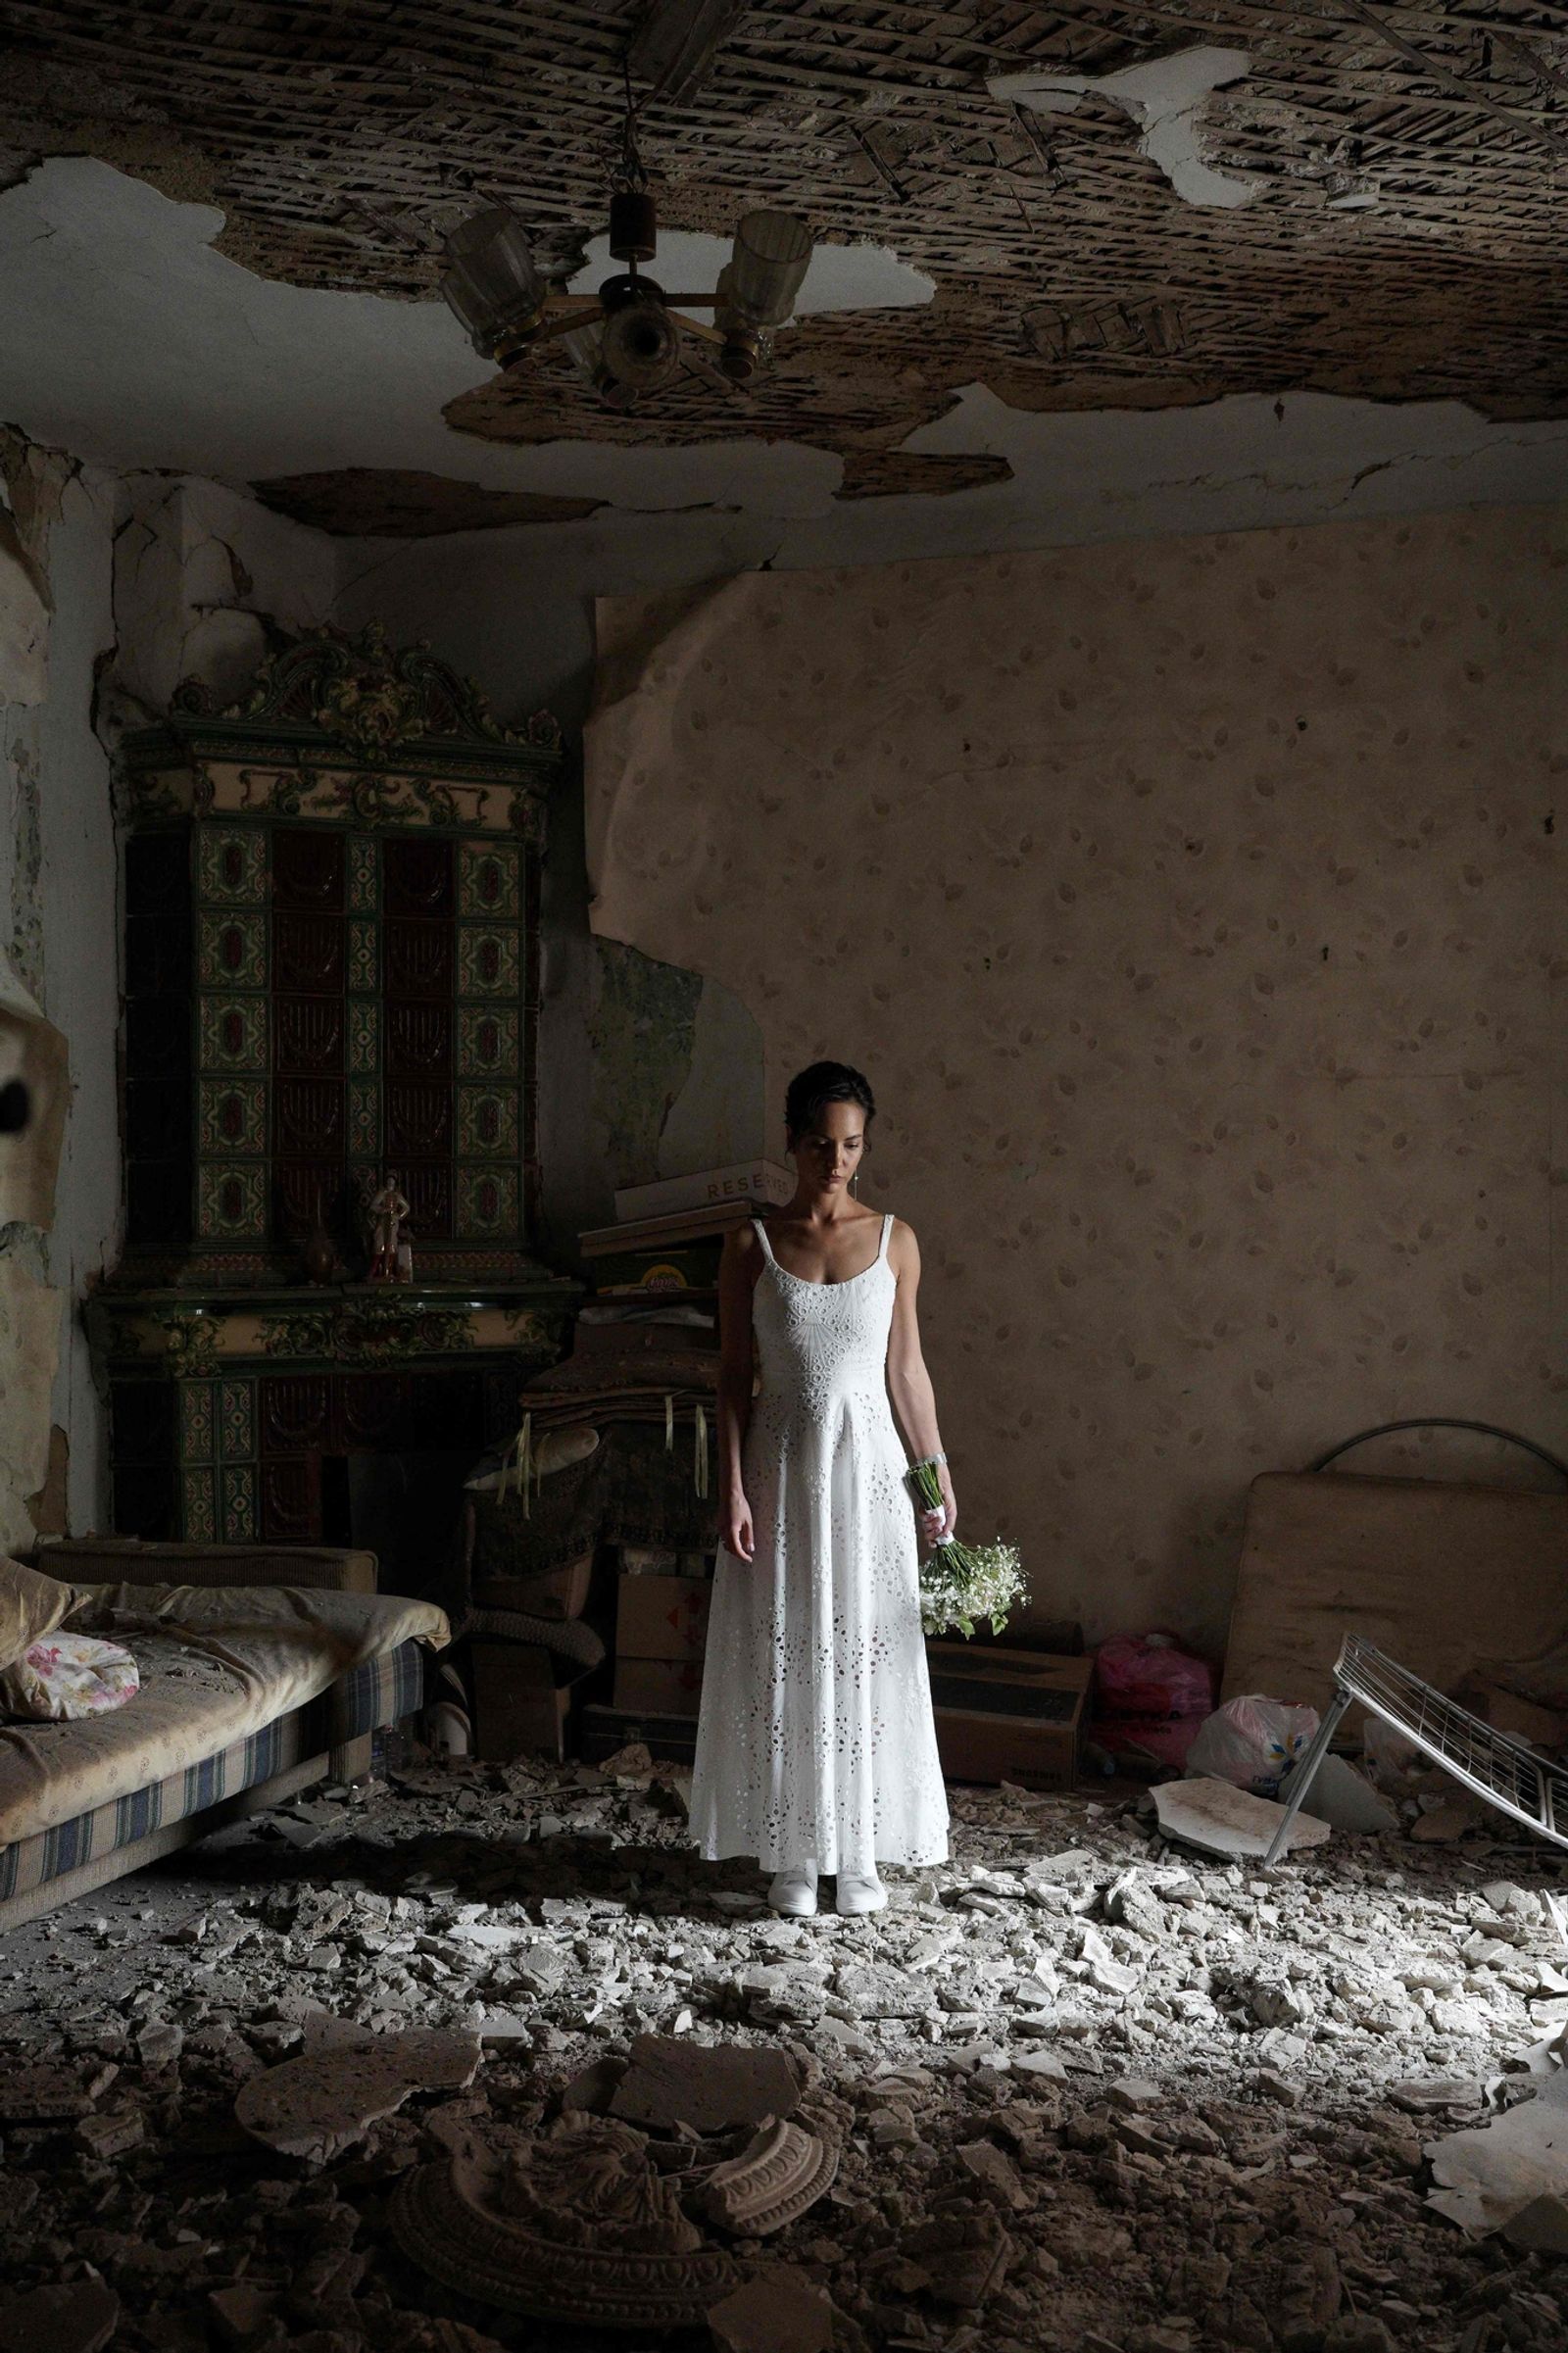  Daria Steniukova i parrets udbombede lejlighed. De valgte at blive gift på trods af Ruslands bombardementer. Foto: Oleksandr Demianiv/ Ritzau Scanpix